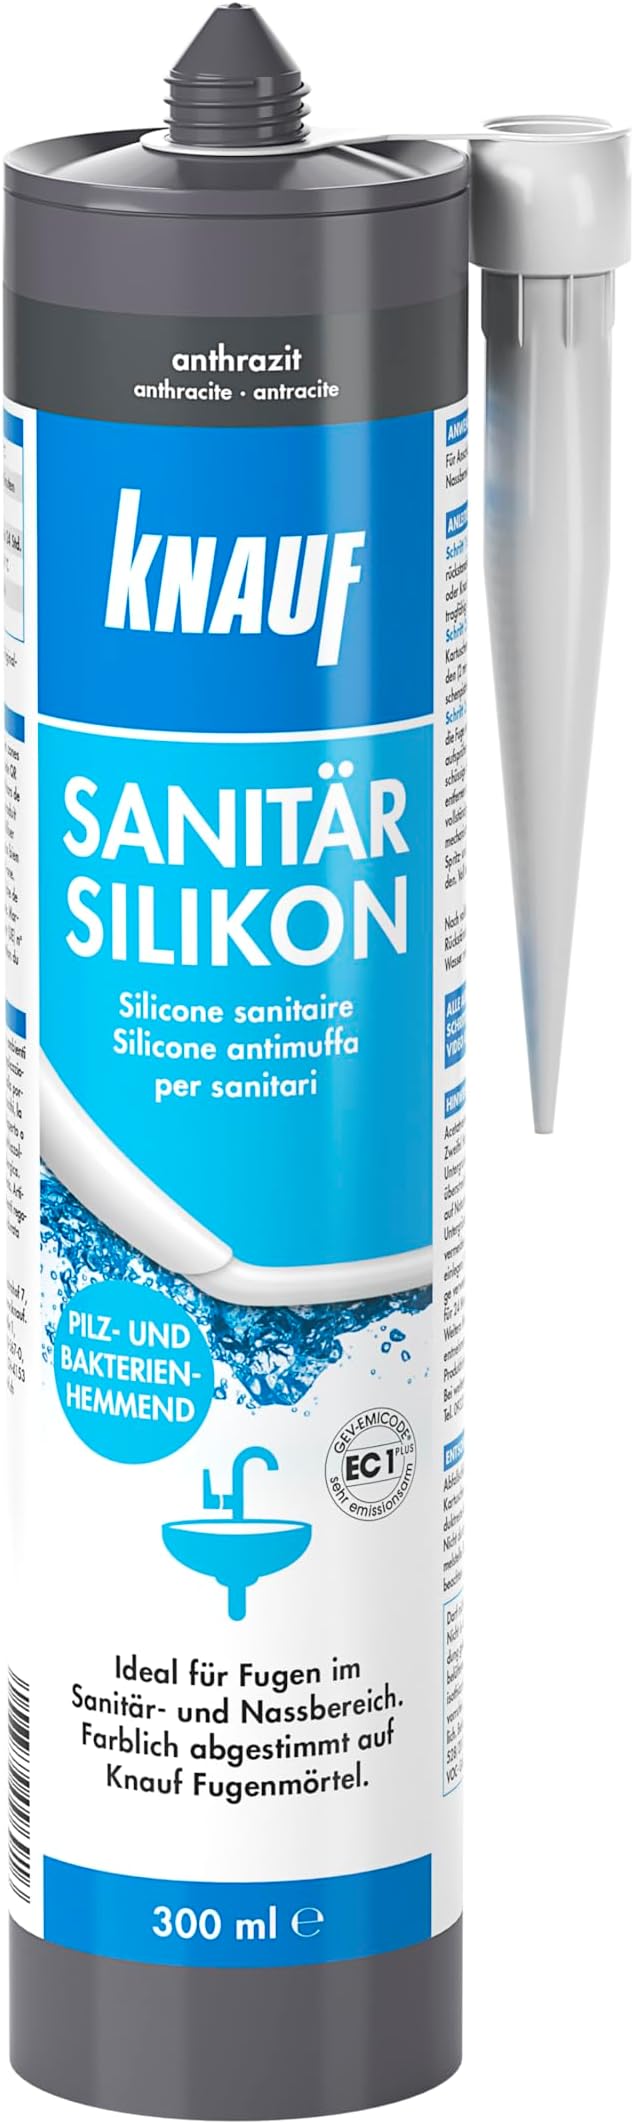 Knauf Sanitär Silicon